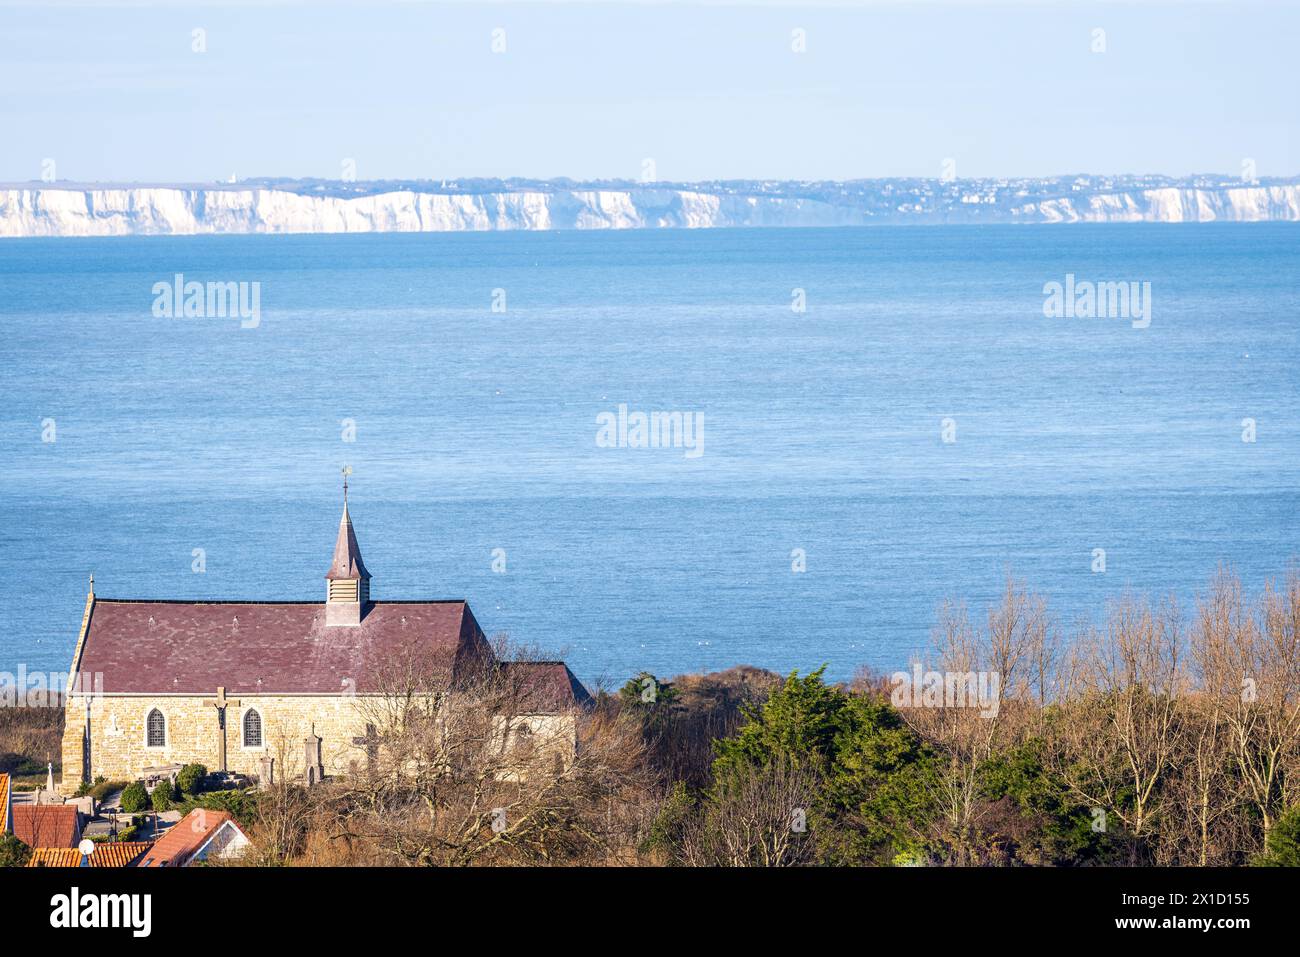 L'église de Tardinghen et les Côtes anglaises depuis la Côte d'Opale, Francia, Pas de Calais, hiver Foto Stock